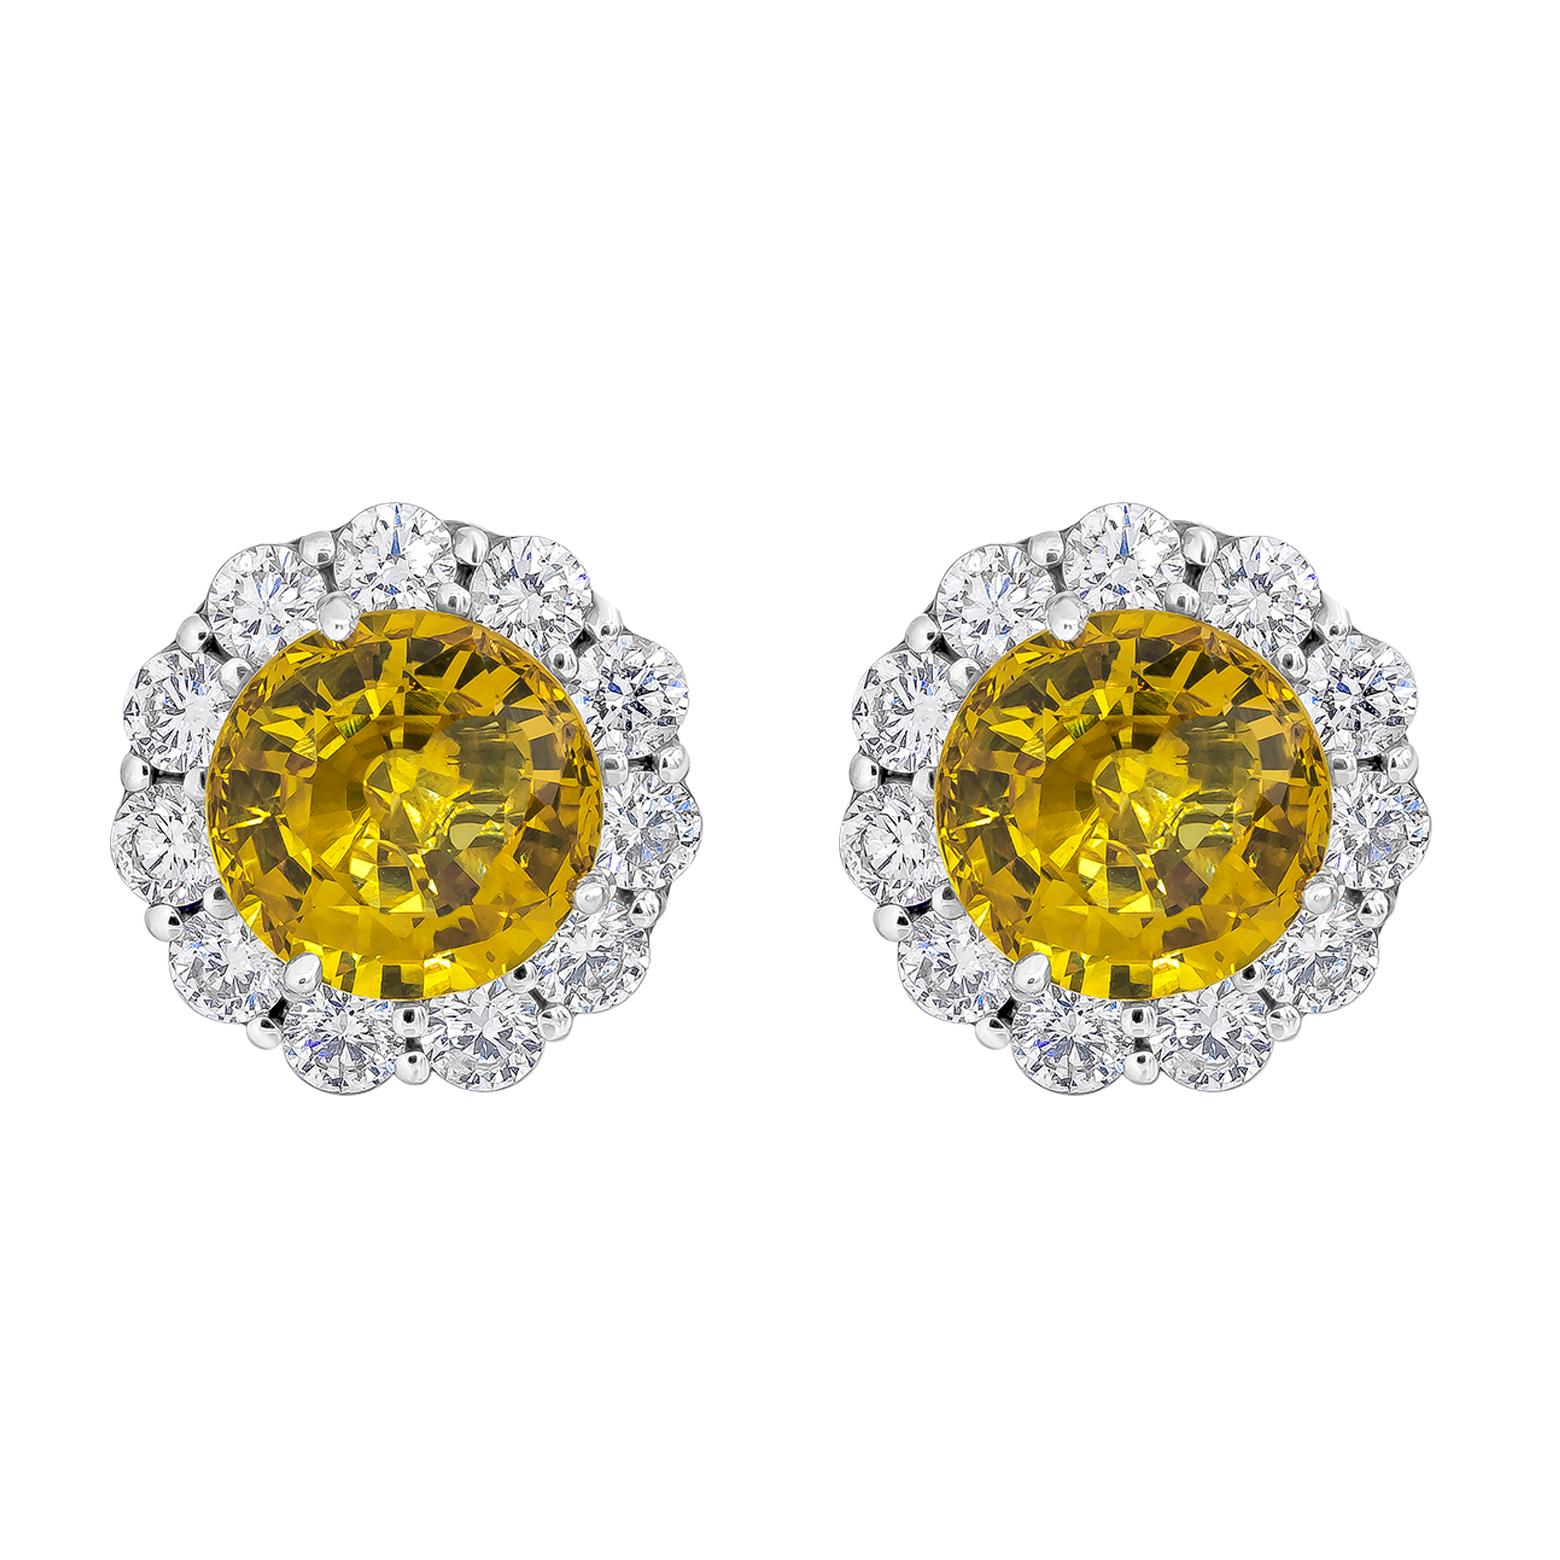 Deux saphirs jaunes ronds et brillants d'un poids total de 6,94 carats, entourés d'une rangée de diamants ronds et brillants d'un poids total de 2,12 carats, sont mis en valeur. Magnifiquement serti dans une monture en platine poli.

Style